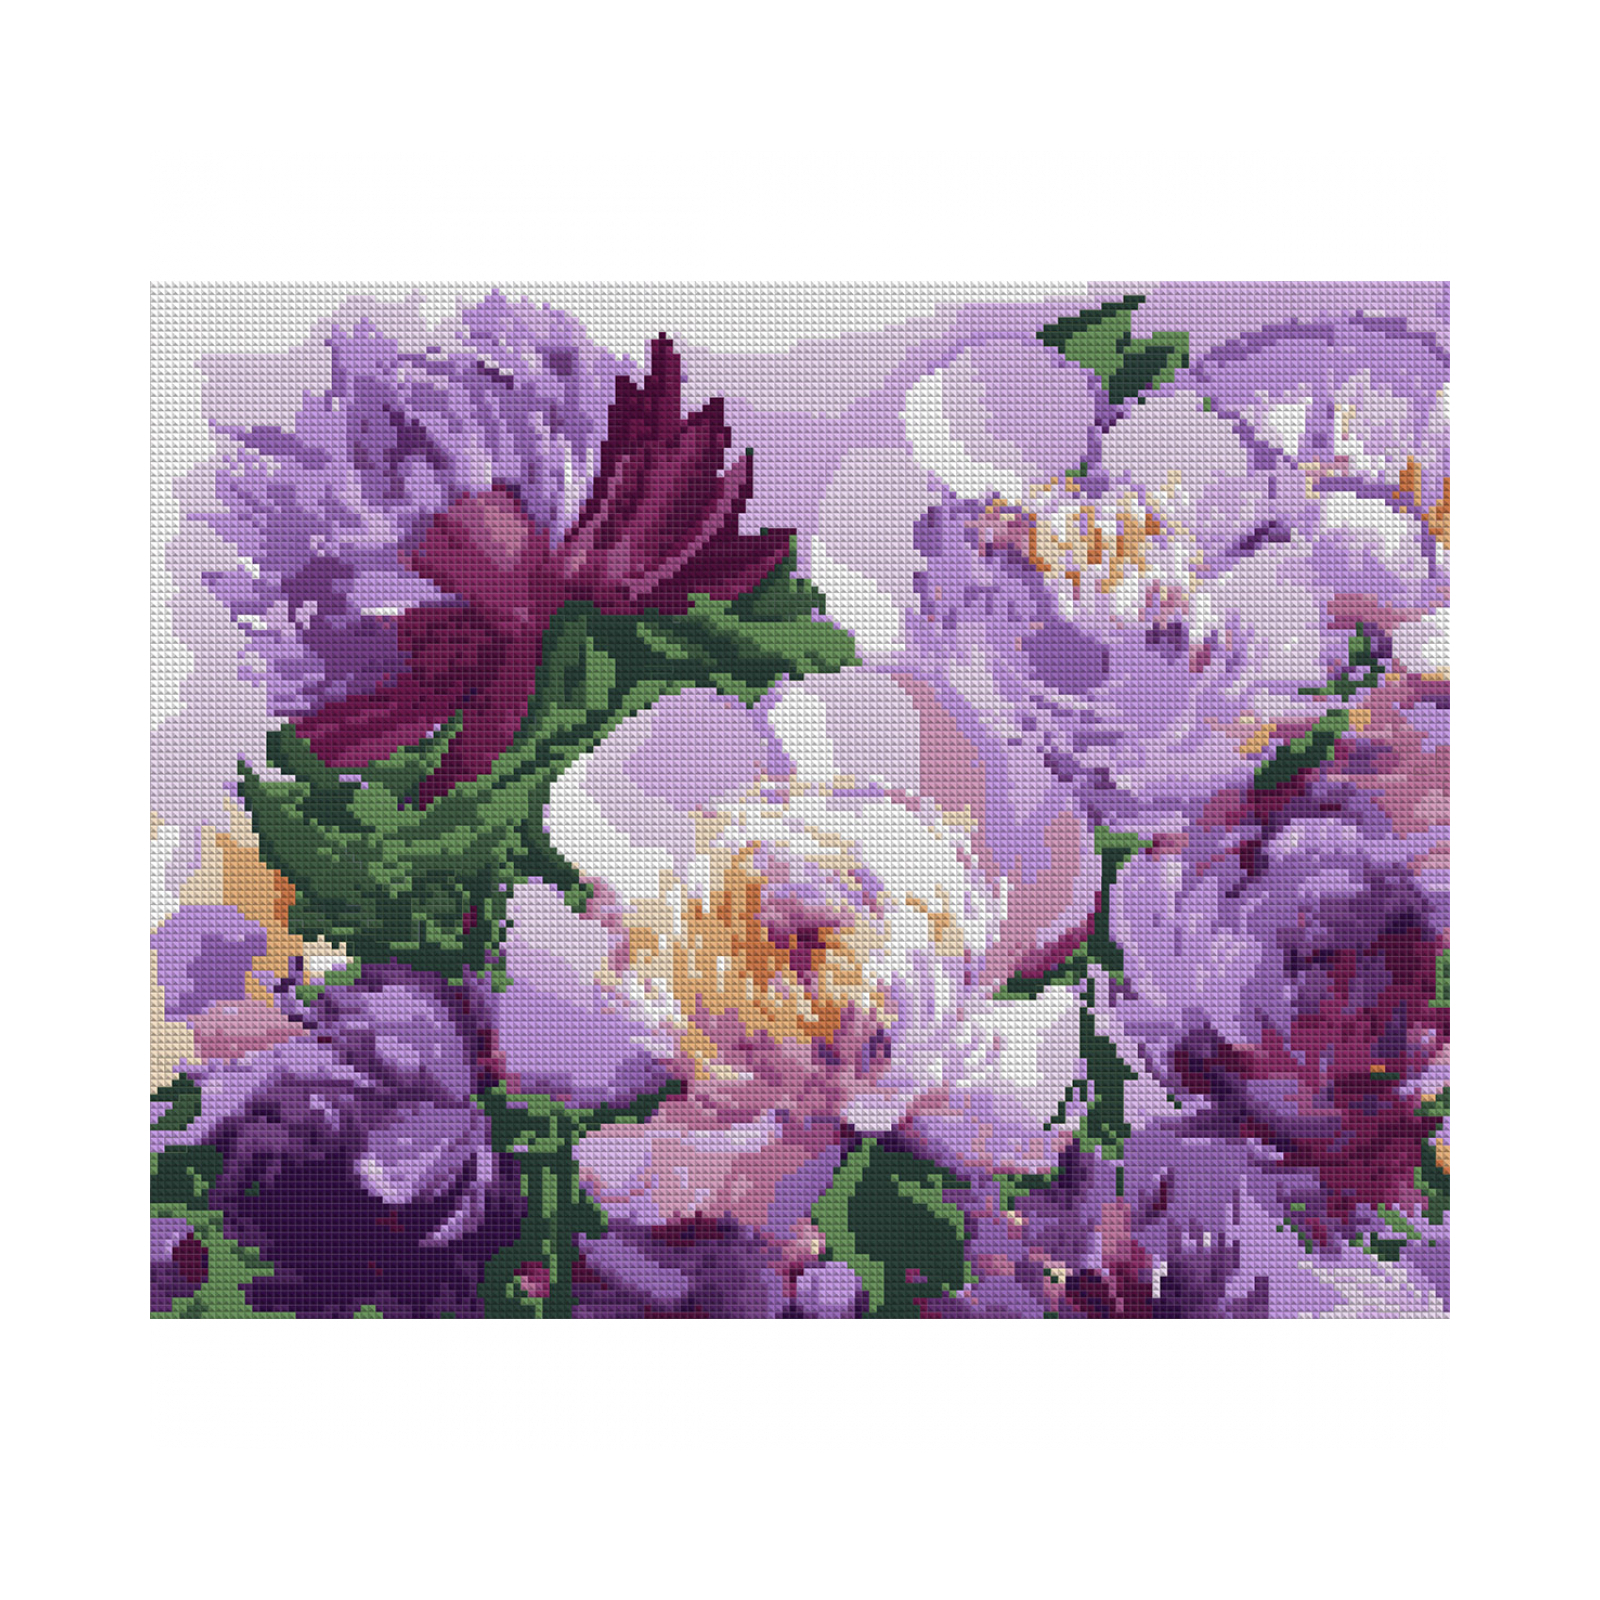 Картина по номерам Santi Фиолетовые пионы 40*50 см алмазная мозаика (954790)